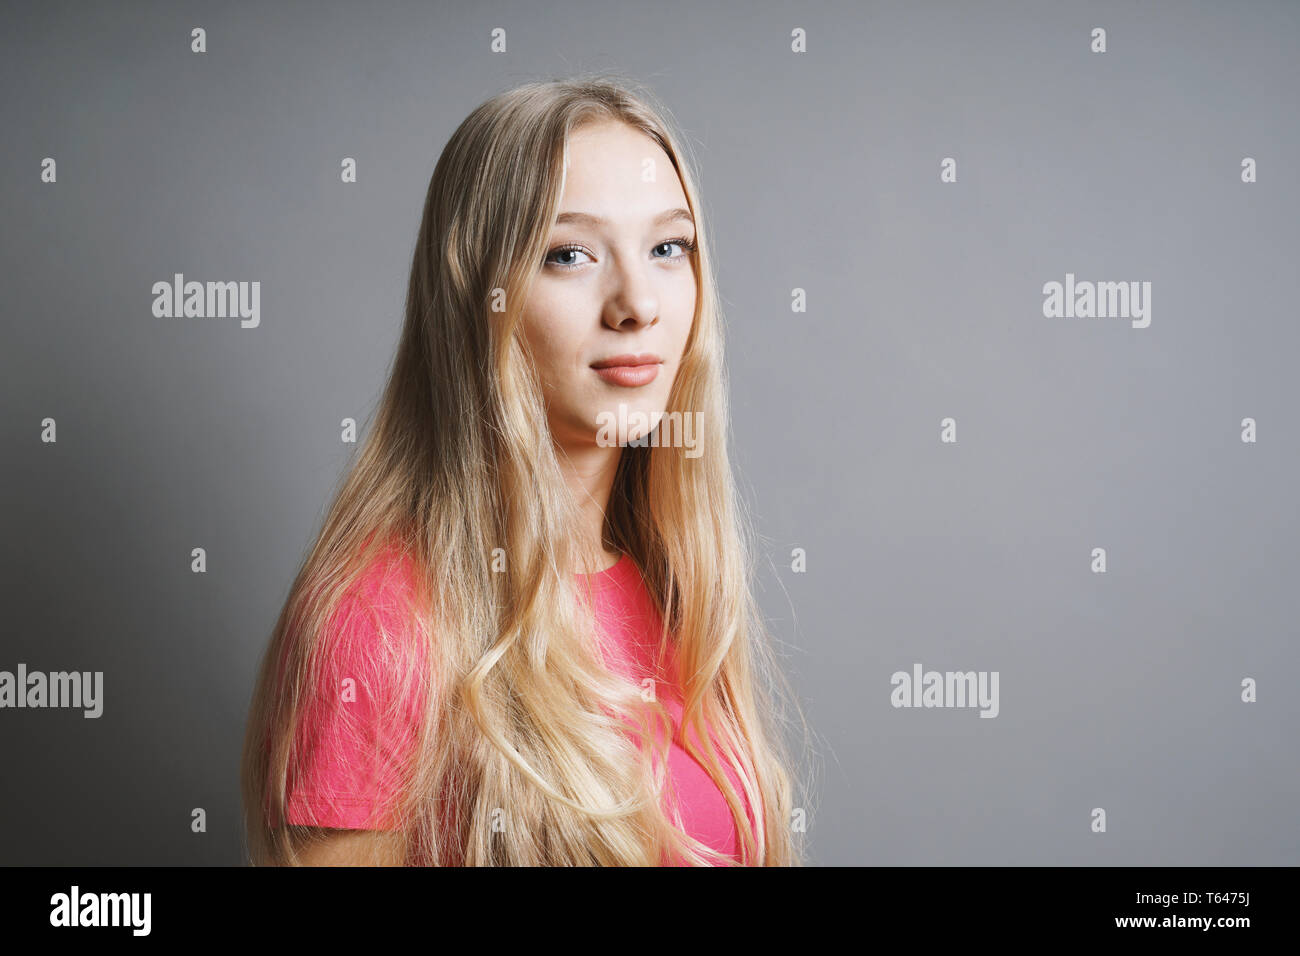 Sicher zufriedener junge Teenager Frau mit langen blonden Haaren und rosa-t-shirt gegen grauen Hintergrund mit Kopie Raum Stockfoto